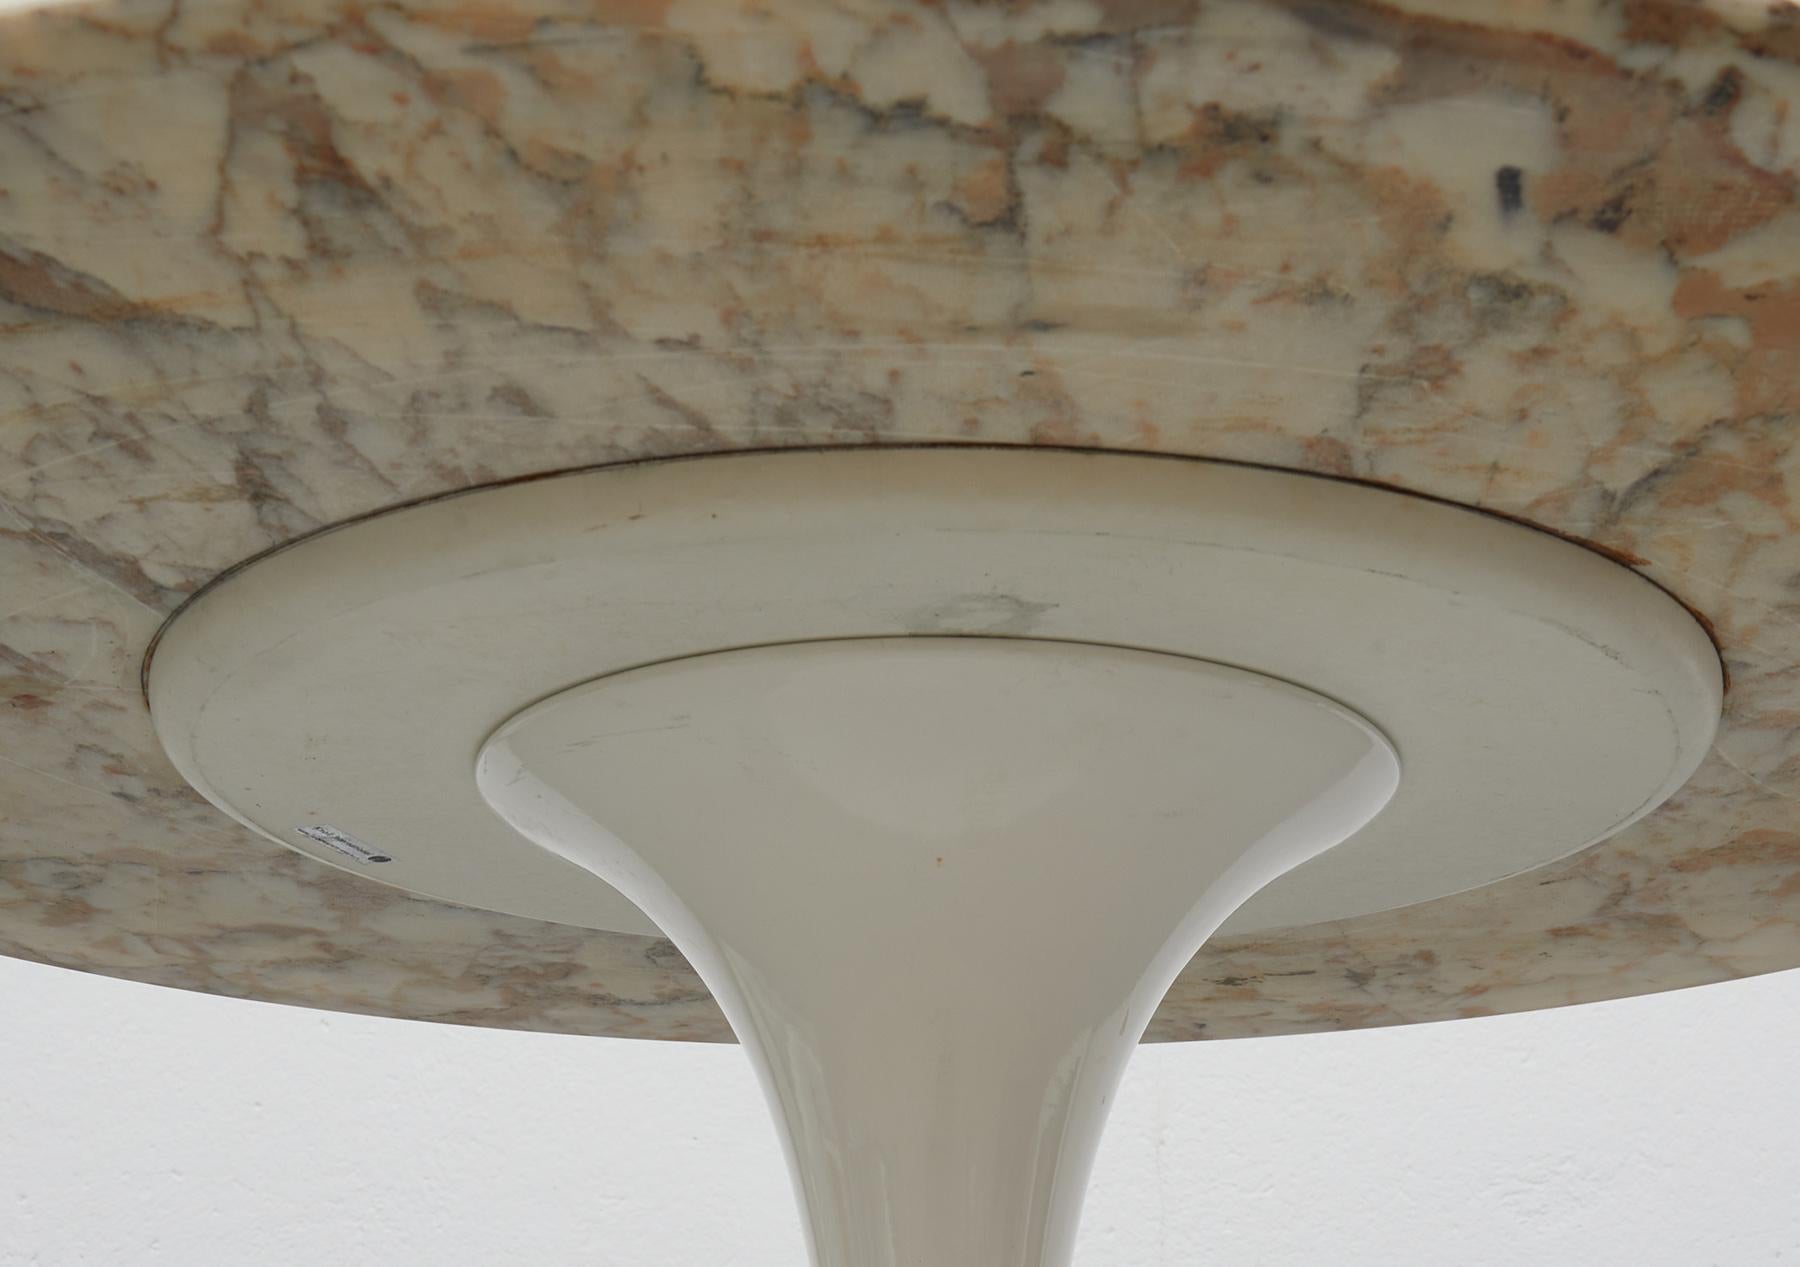 Swiss Knoll Eero Saarinen Round Tulip Table with Stunning Arabescato Marble Top